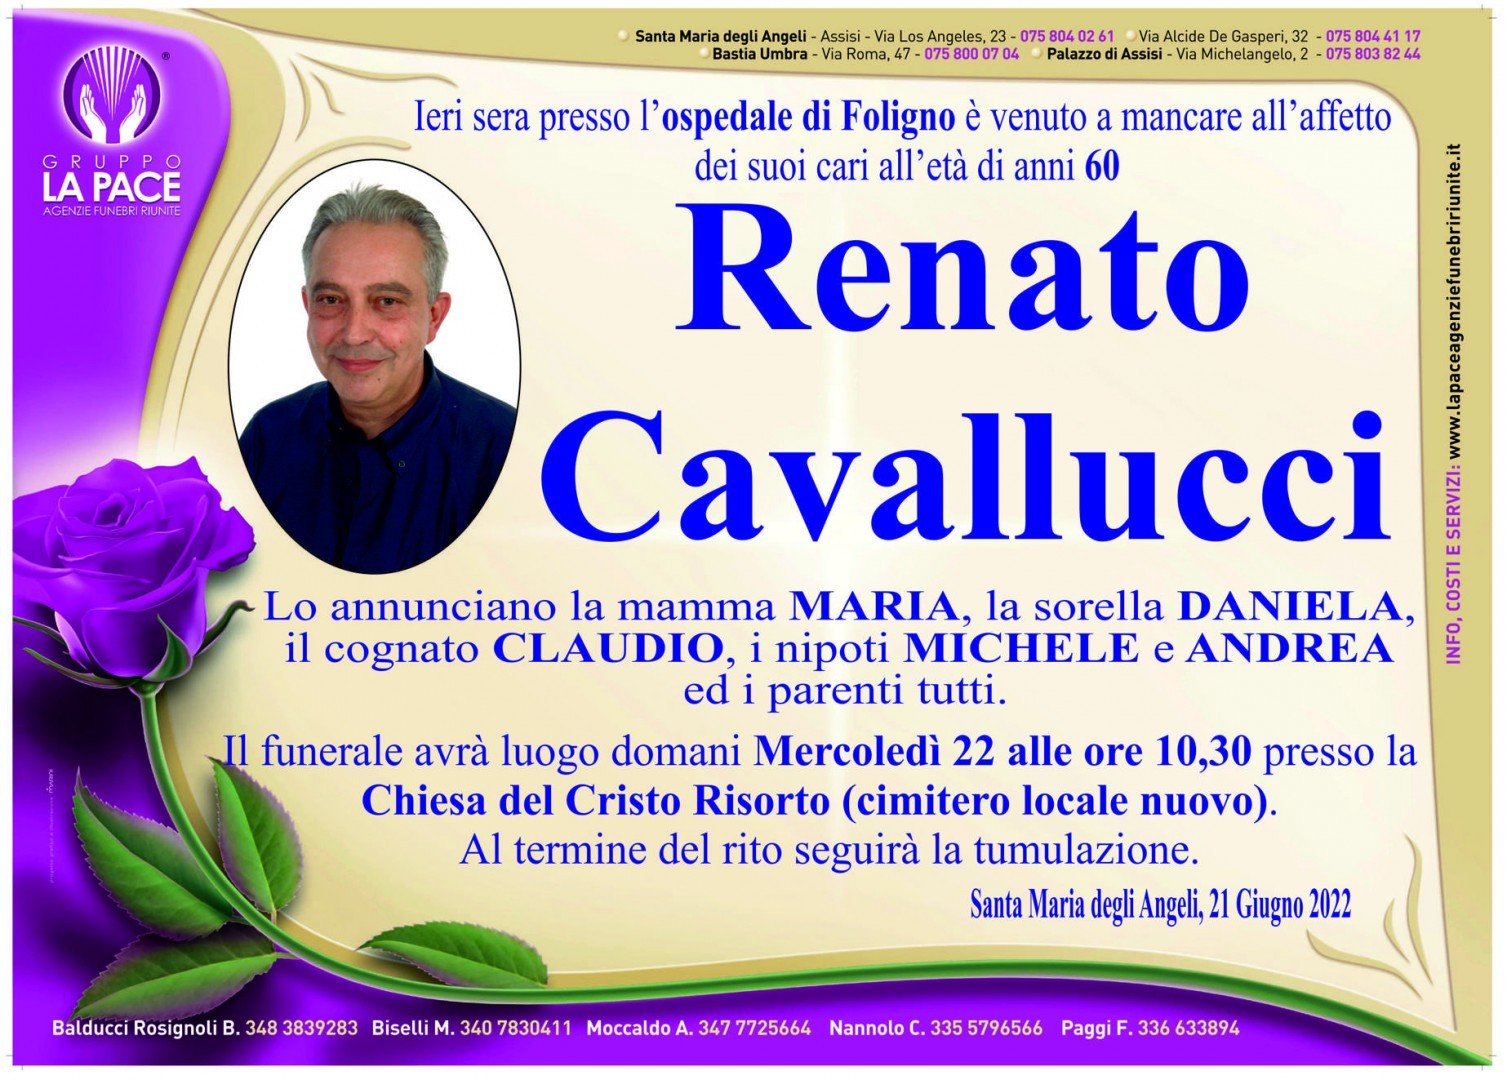 Renato Cavallucci